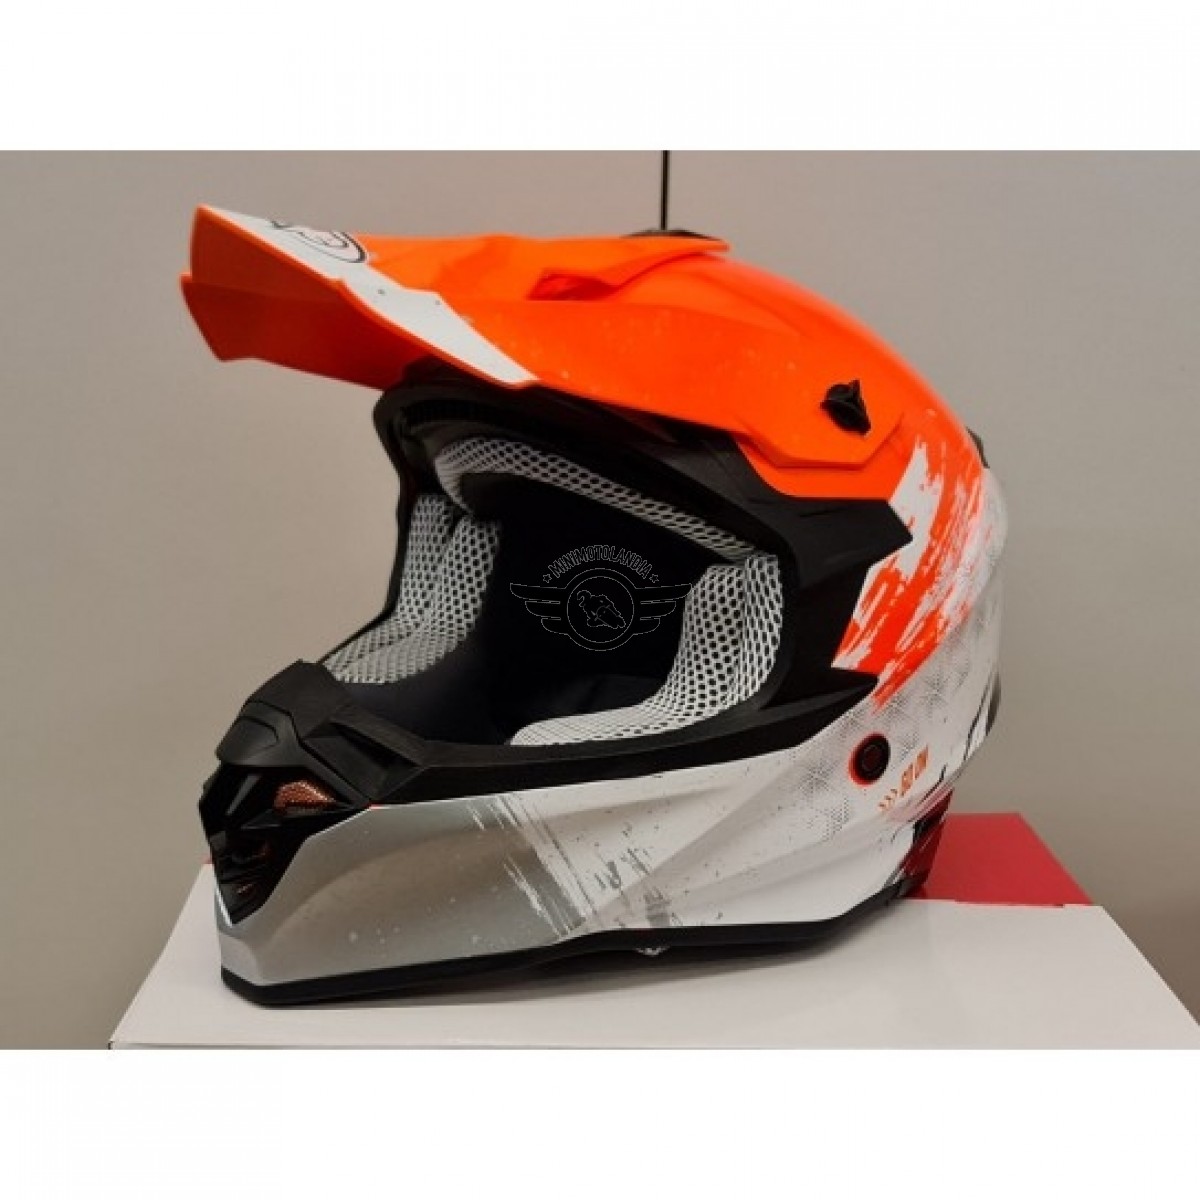 Casco One Helmets Racing Protezione Moto Cross Enduro Offroad Arancio Fluo  Bianco